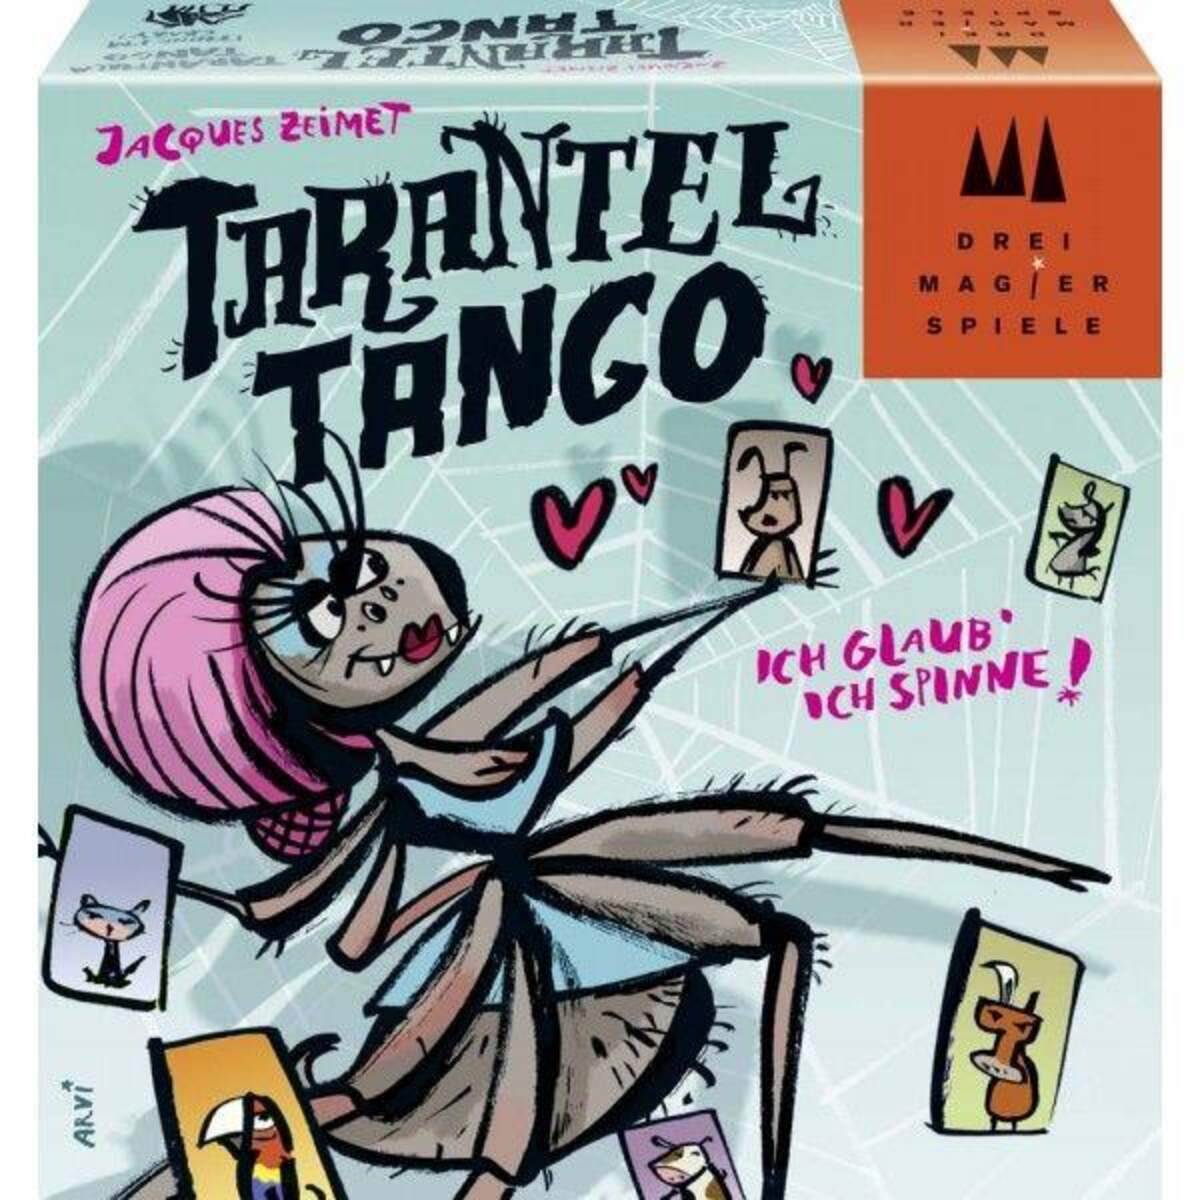 Drei Magier® Tarantel Tango